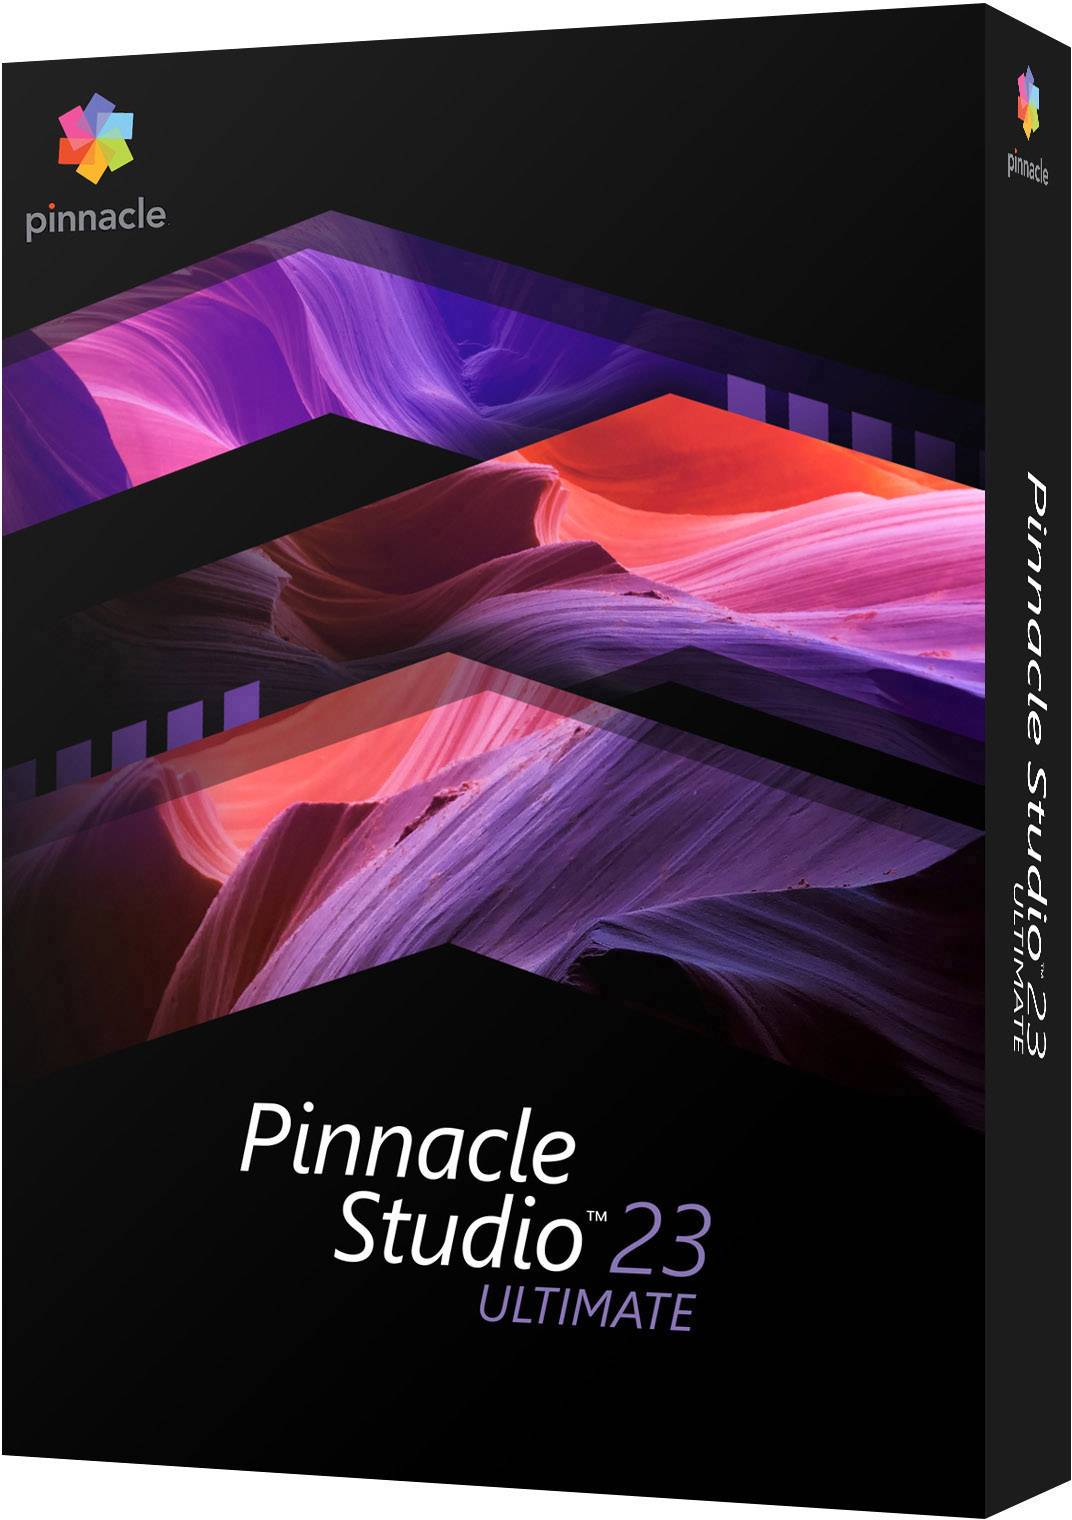 pinnacle studio 23 ultimate hevc